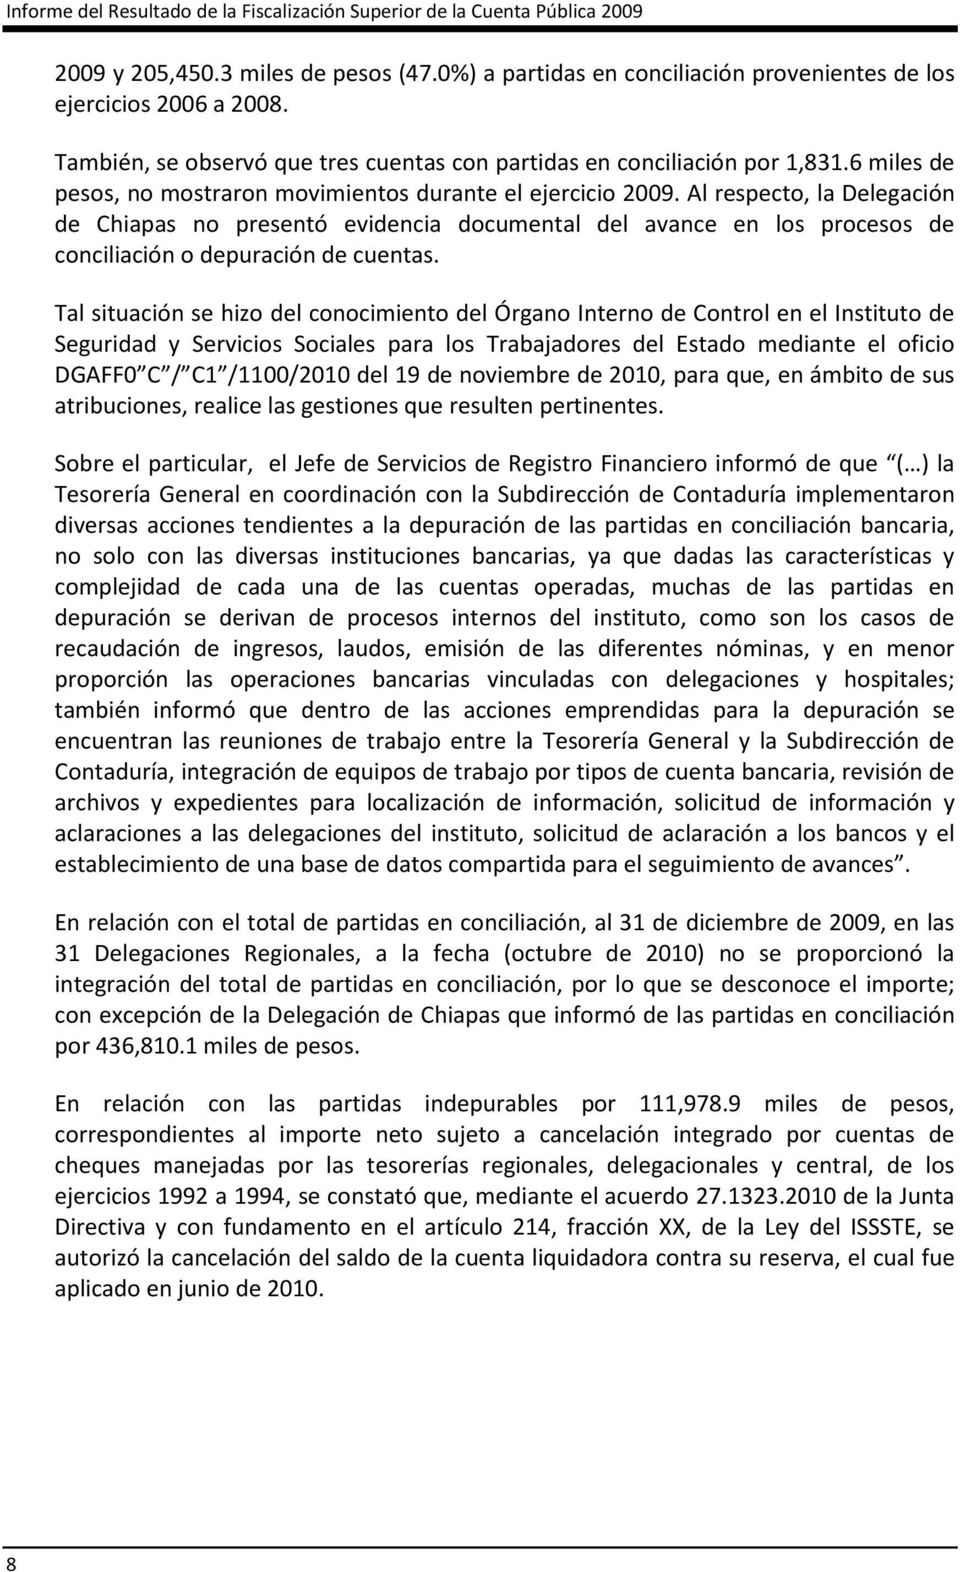 Al respecto, la Delegación de Chiapas no presentó evidencia documental del avance en los procesos de conciliación o depuración de cuentas.